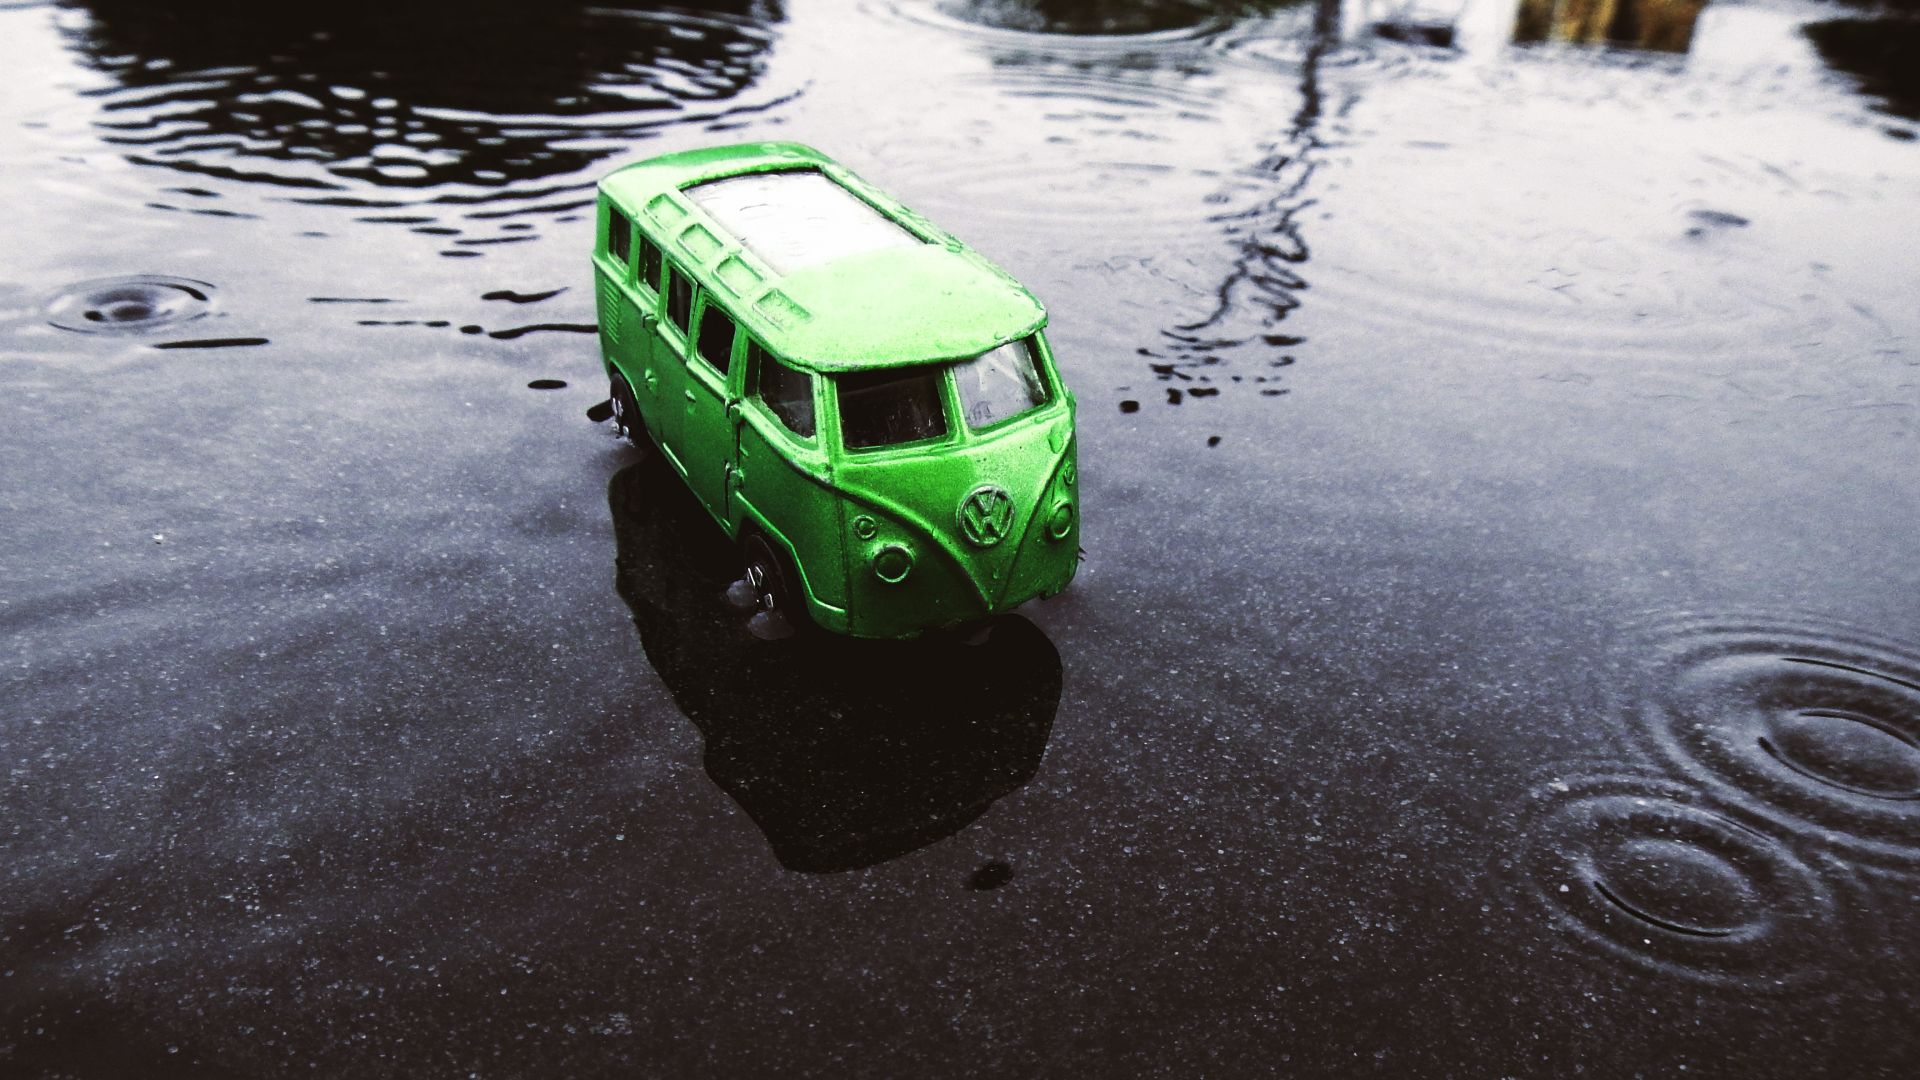 Wallpaper Green van, vehicles, Volkswagen, model, toy, water